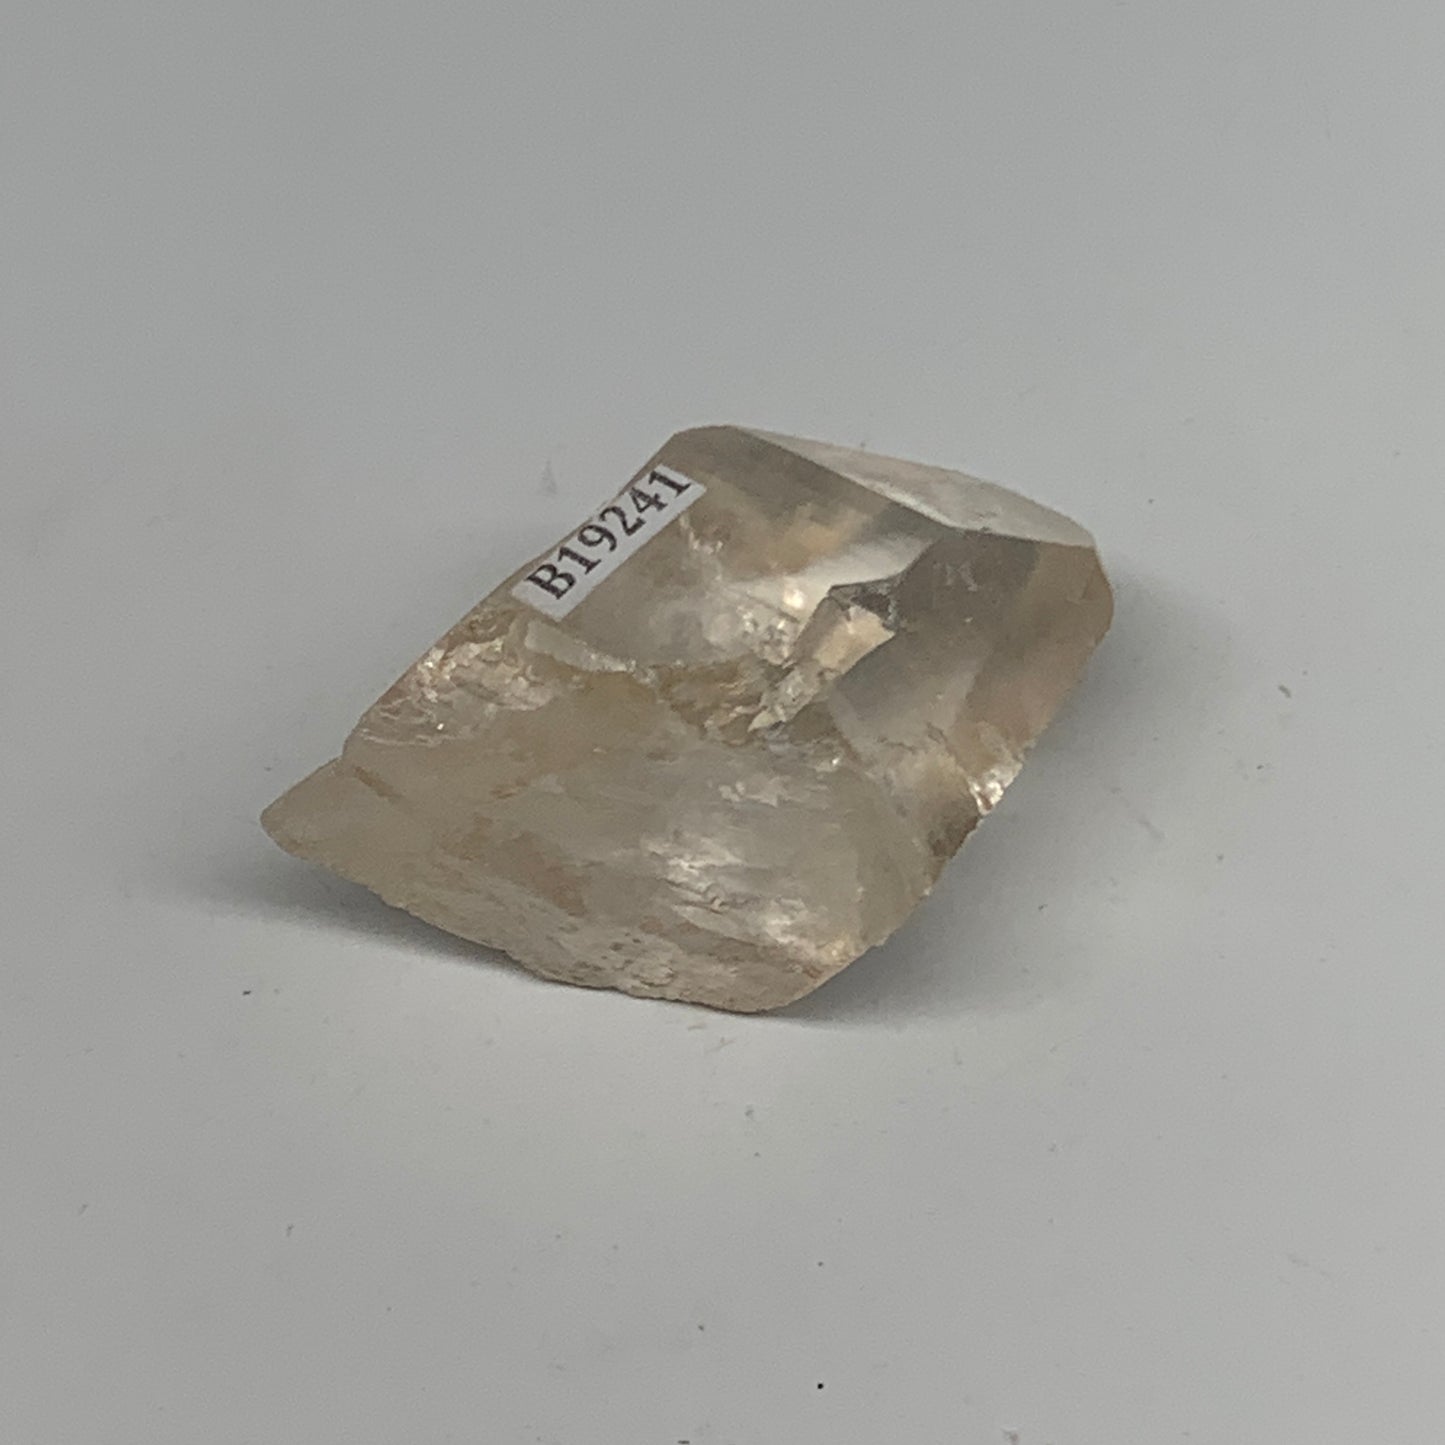 66.5g, 2"x1.4"x1.2", Lemurian Quartz Crystal Mineral Specimens @Brazil, B19241